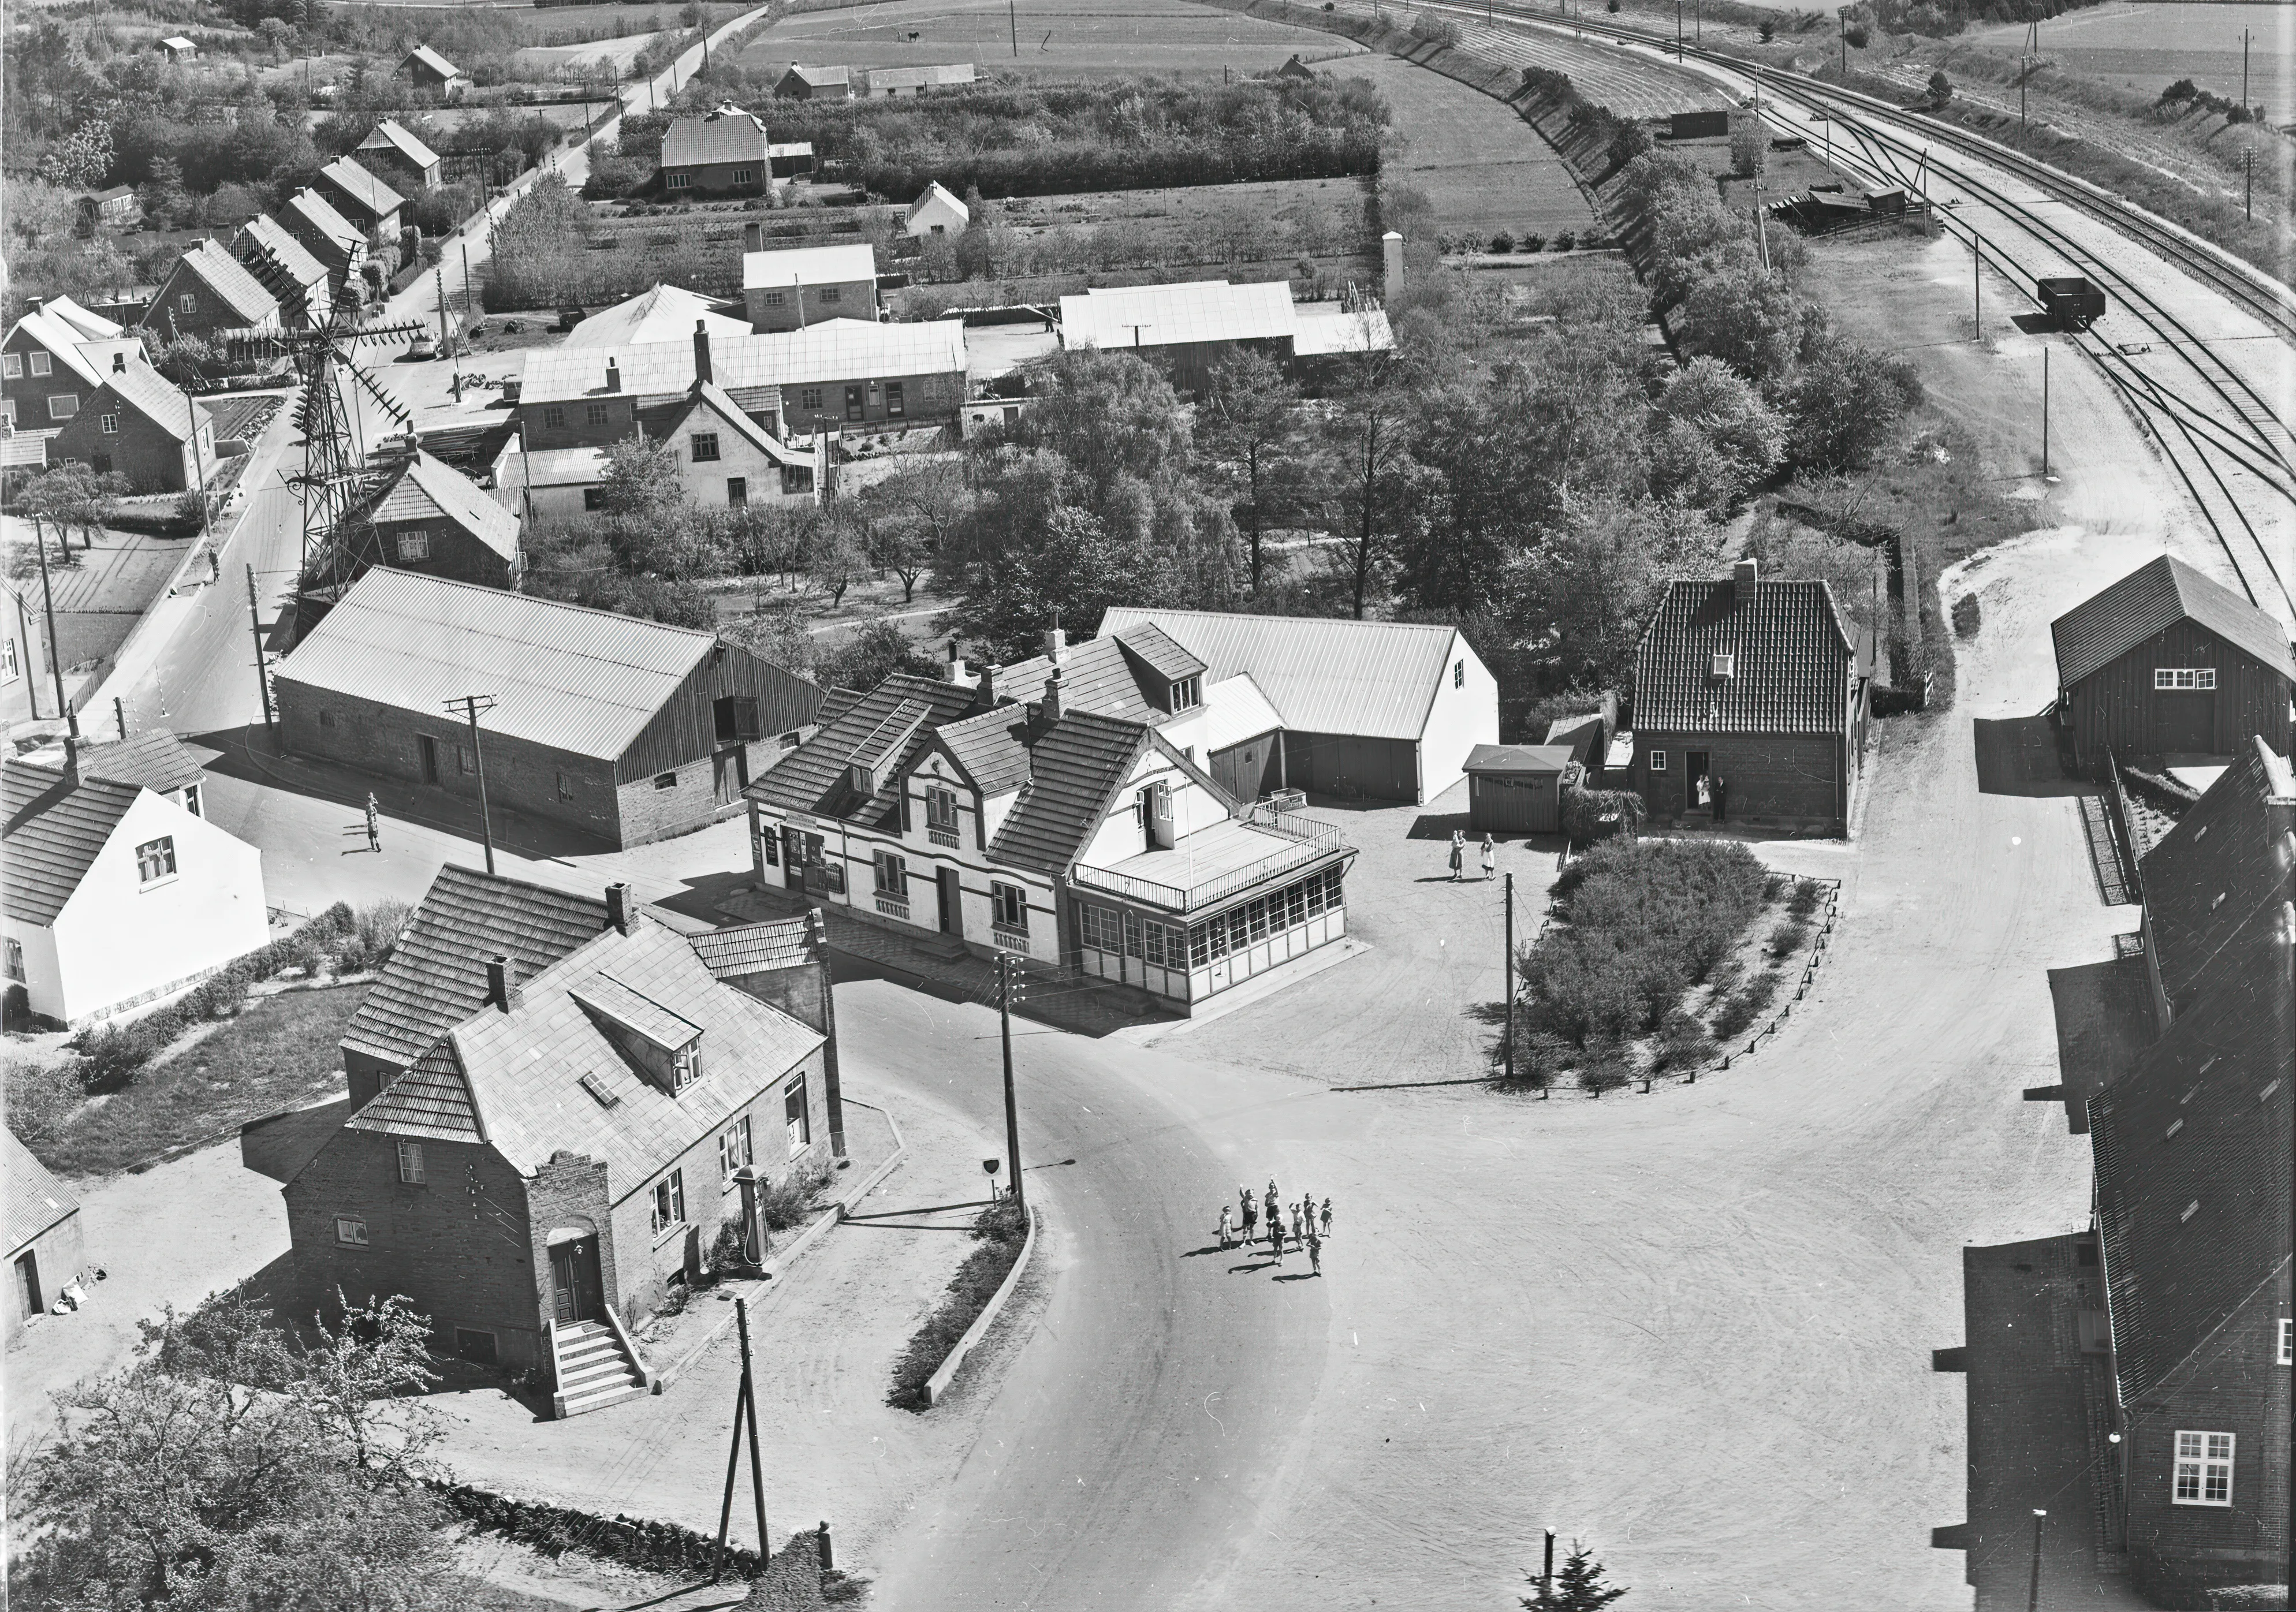 Billede af Tange Billetsalgssted til venstre for stationen med et par stående og kikke i døråbningen.